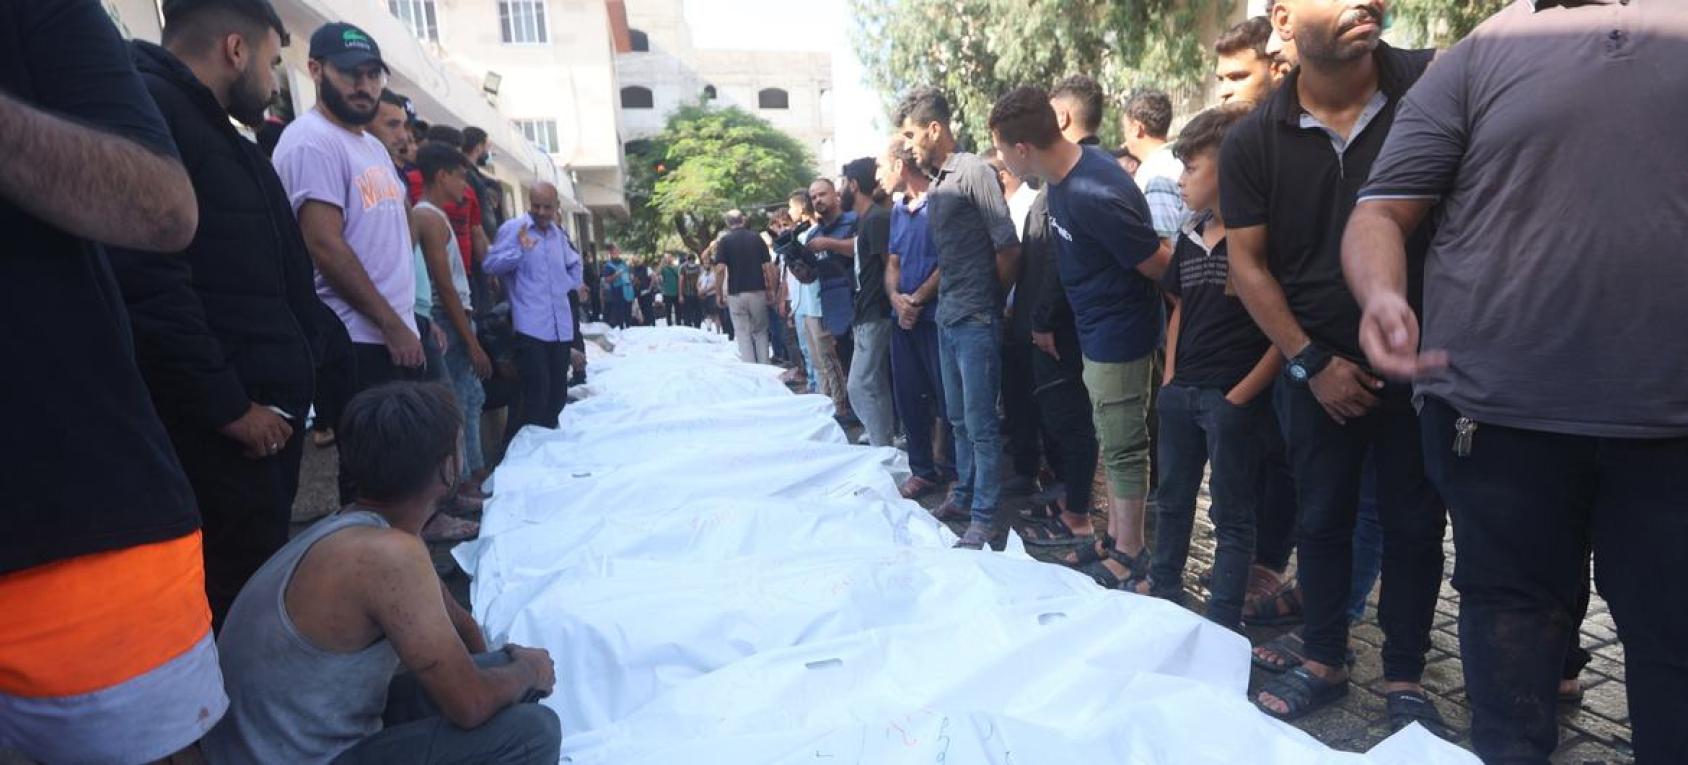 Dolientes asisten al funeral de las personas fallecidas tras los ataques israelíes en Gaza